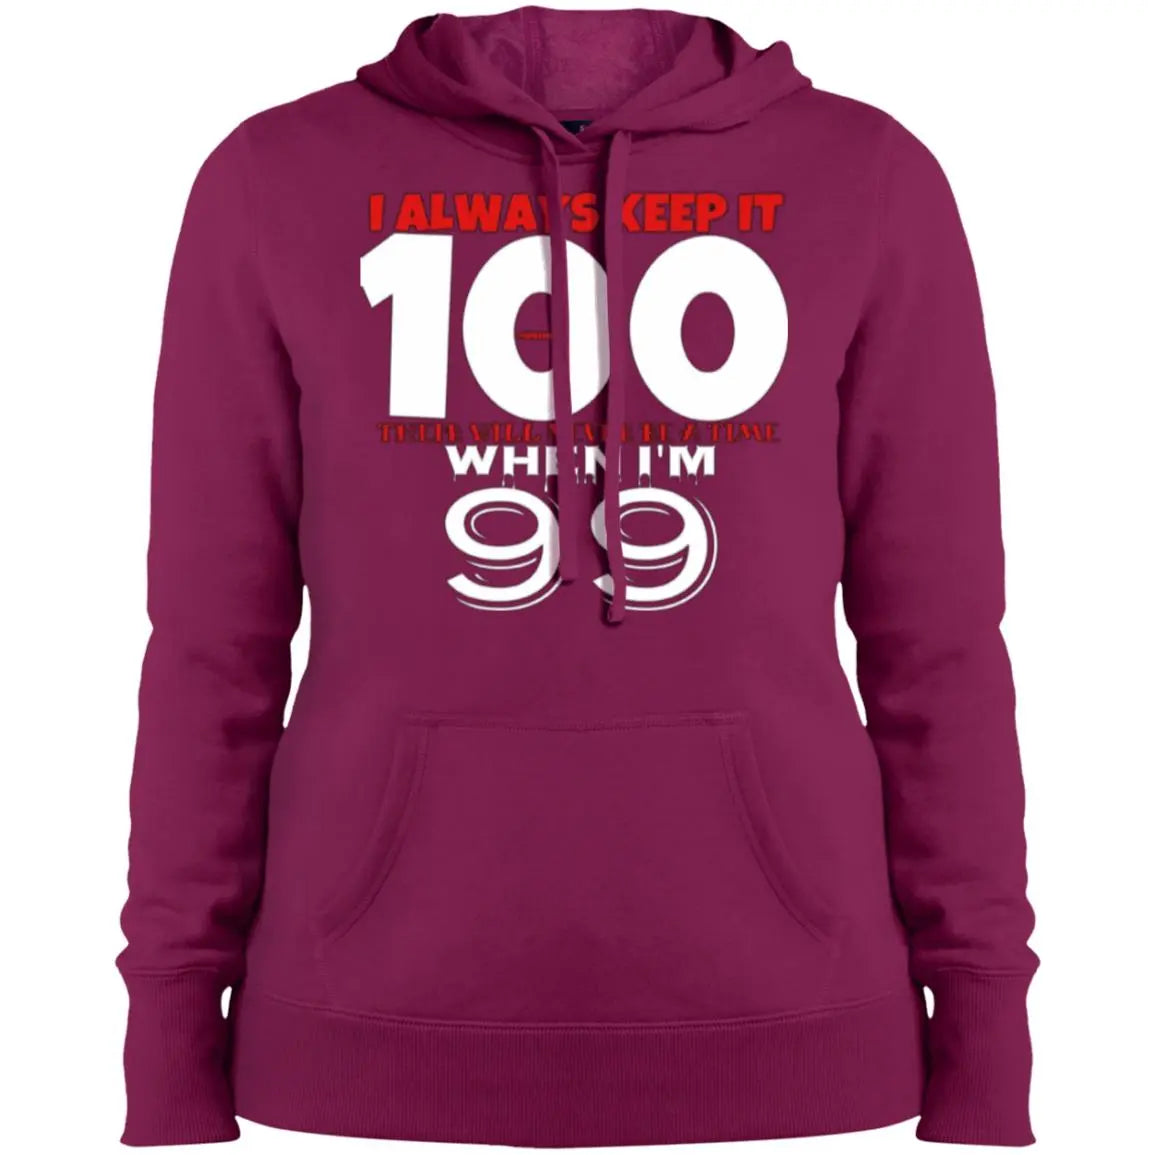 I Always Keep It 100 - Ladies' Pullover Hooded Sweatshirt CustomCat